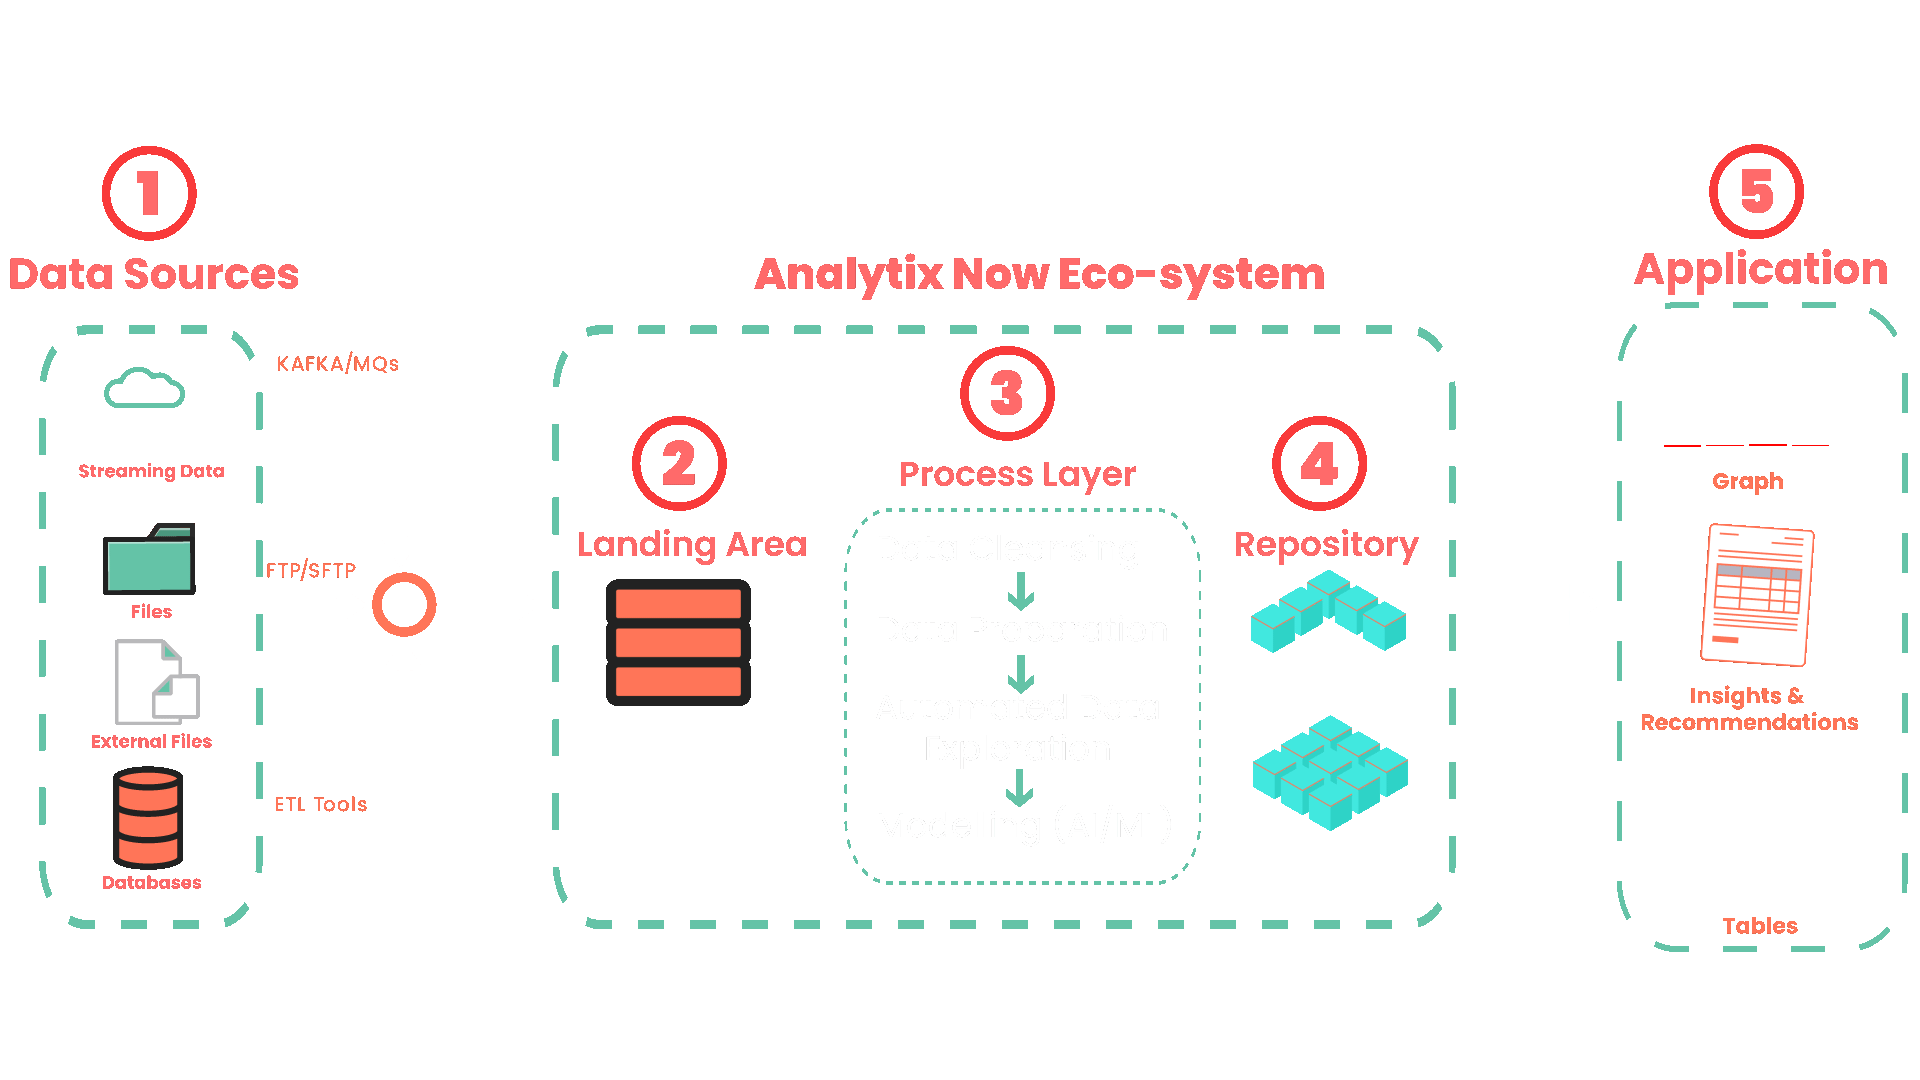 AnalytixNow process of data analytics